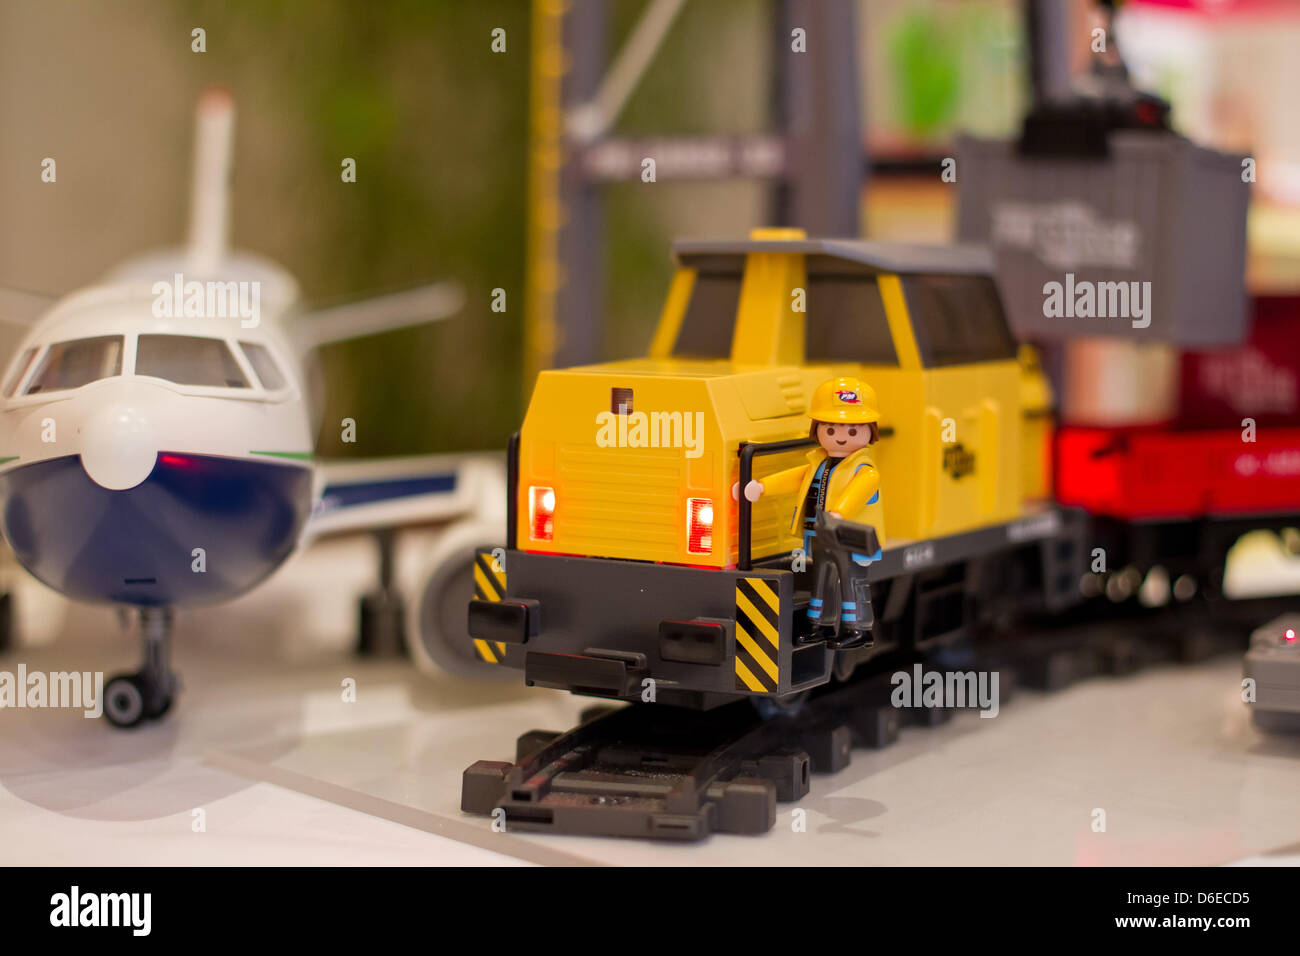 La "RC", un tren de carga eléctrica y un terminal de carga y de pasajeros  por avión fabricante de juguetes Playmobil están en exhibición en ocasión  de la próxima feria de juguetes